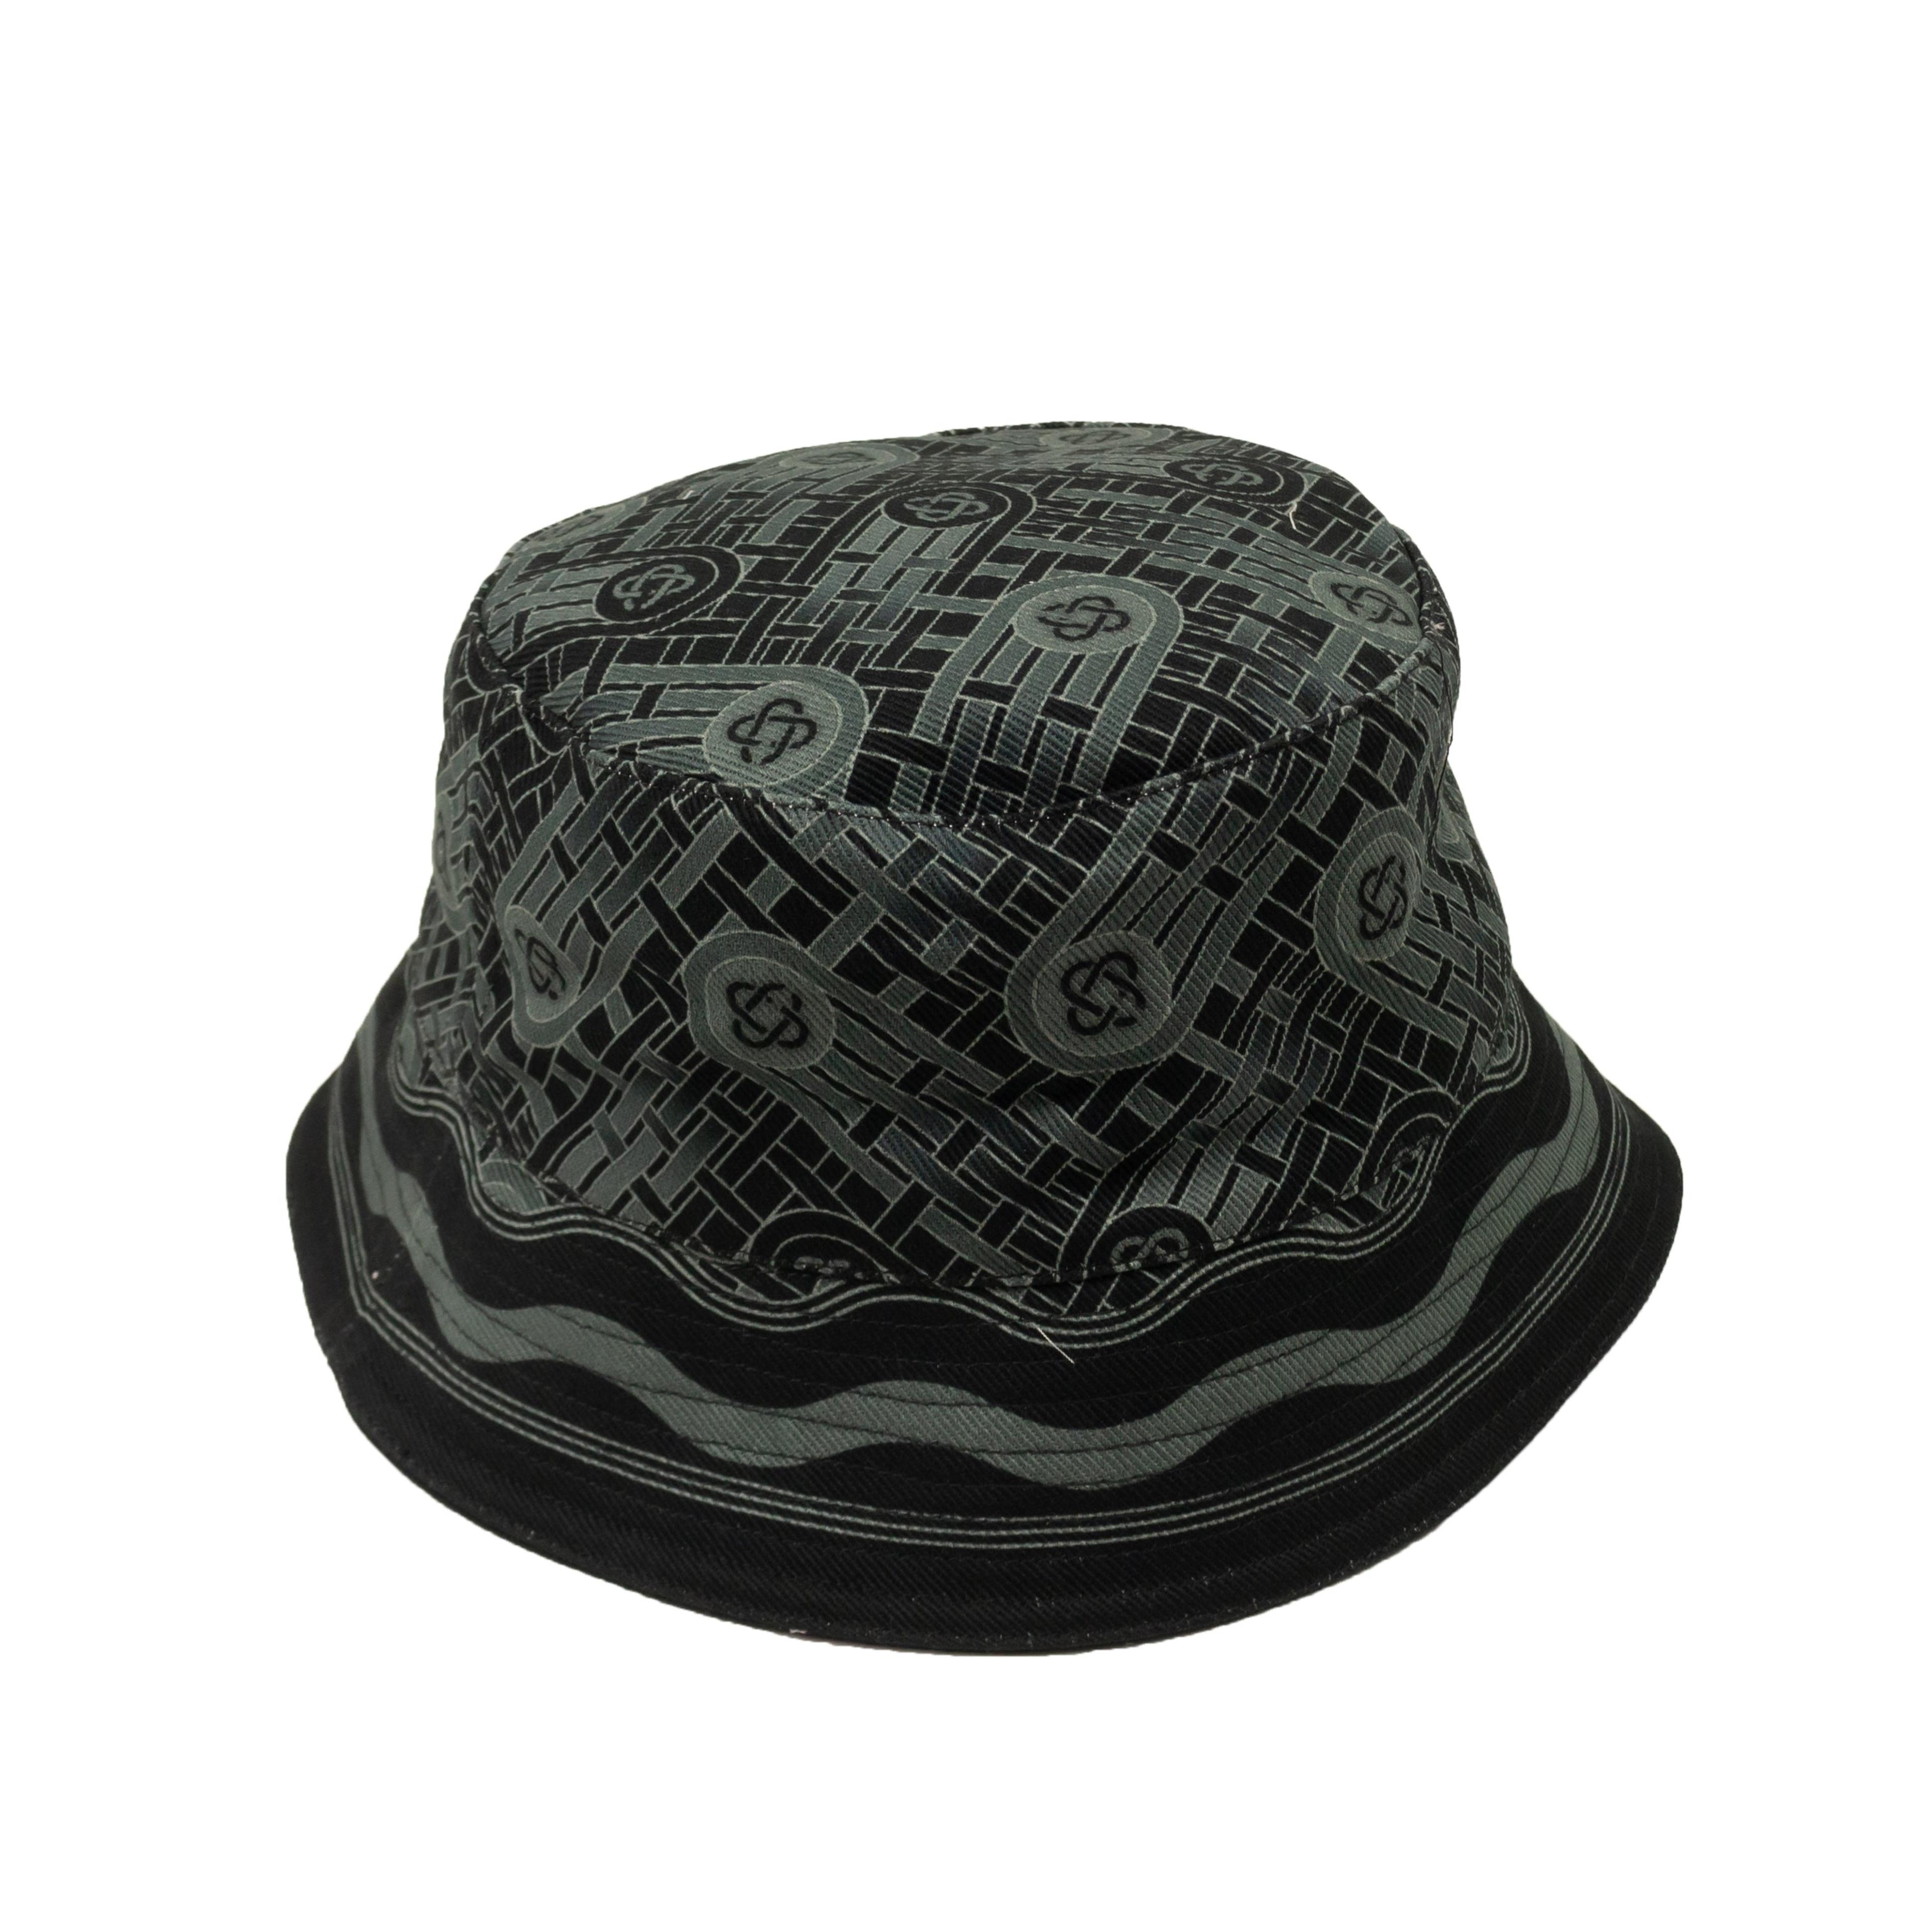 Black And Grey Monogram Printed Bucket Hat